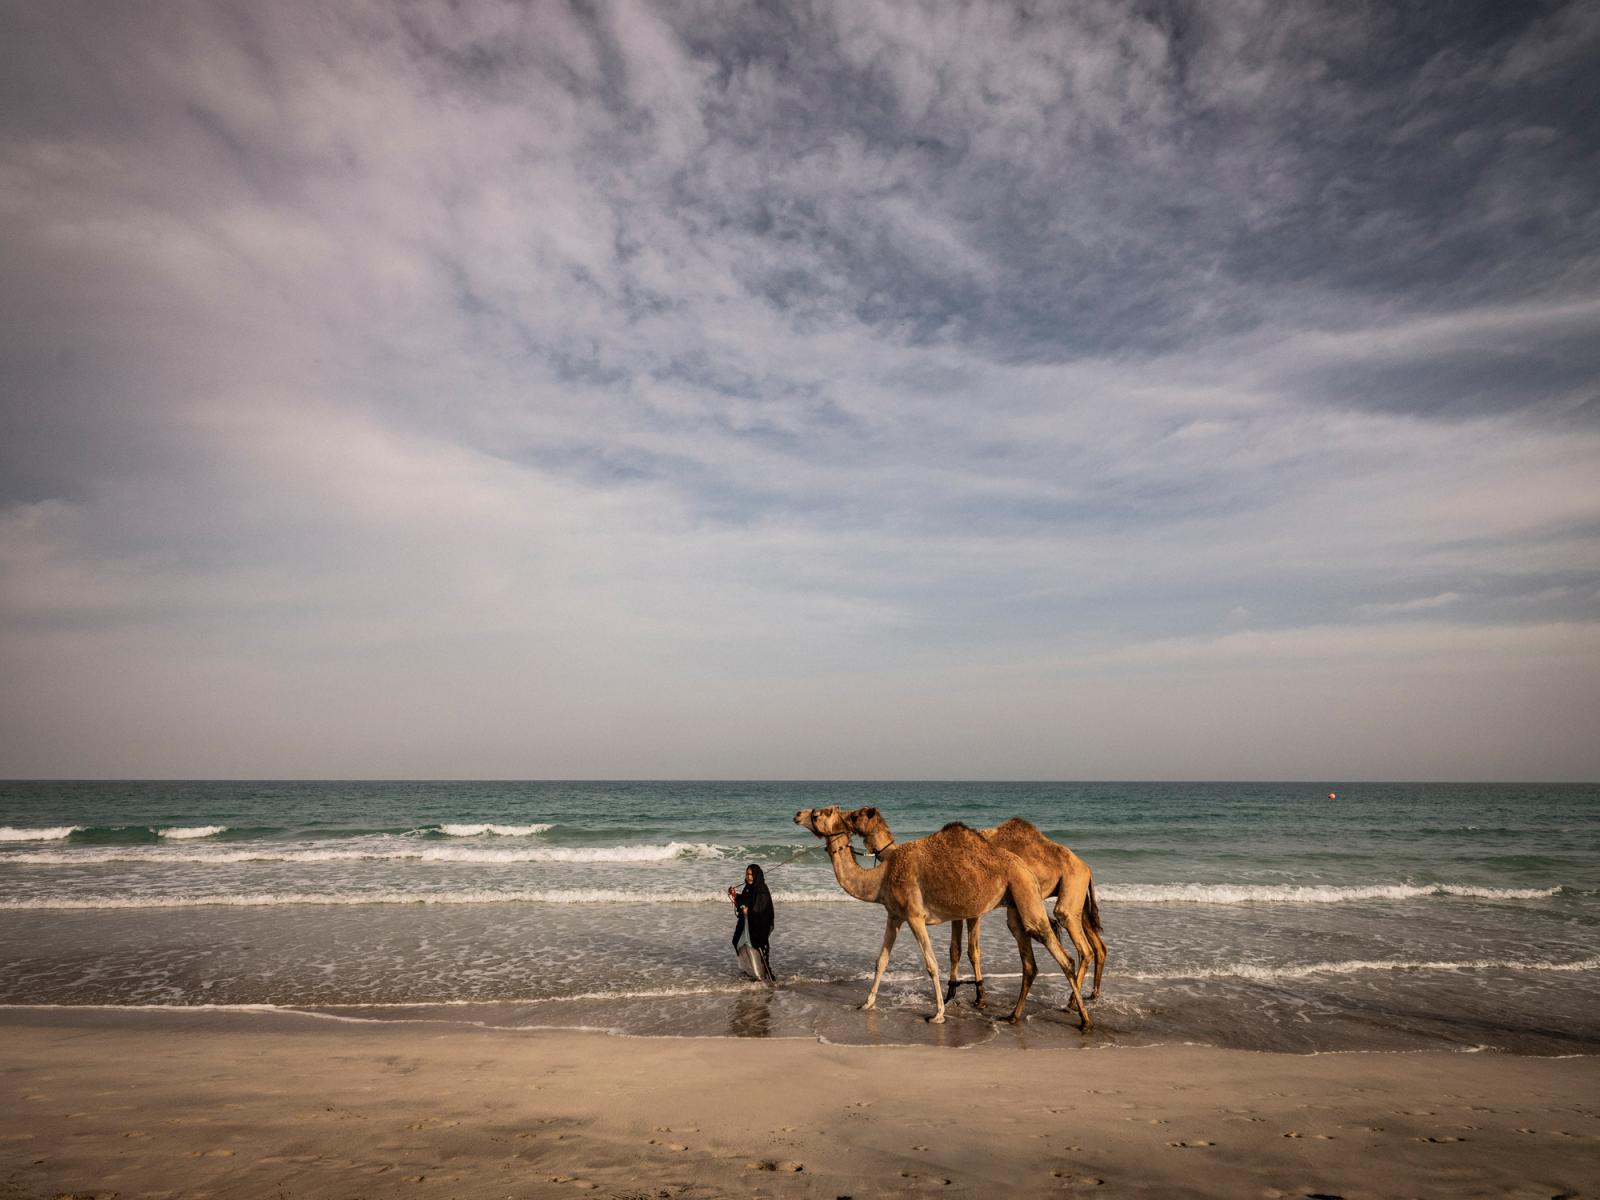 Camels on a beach in Saadiyat Island, Abu Dhabi, UAE